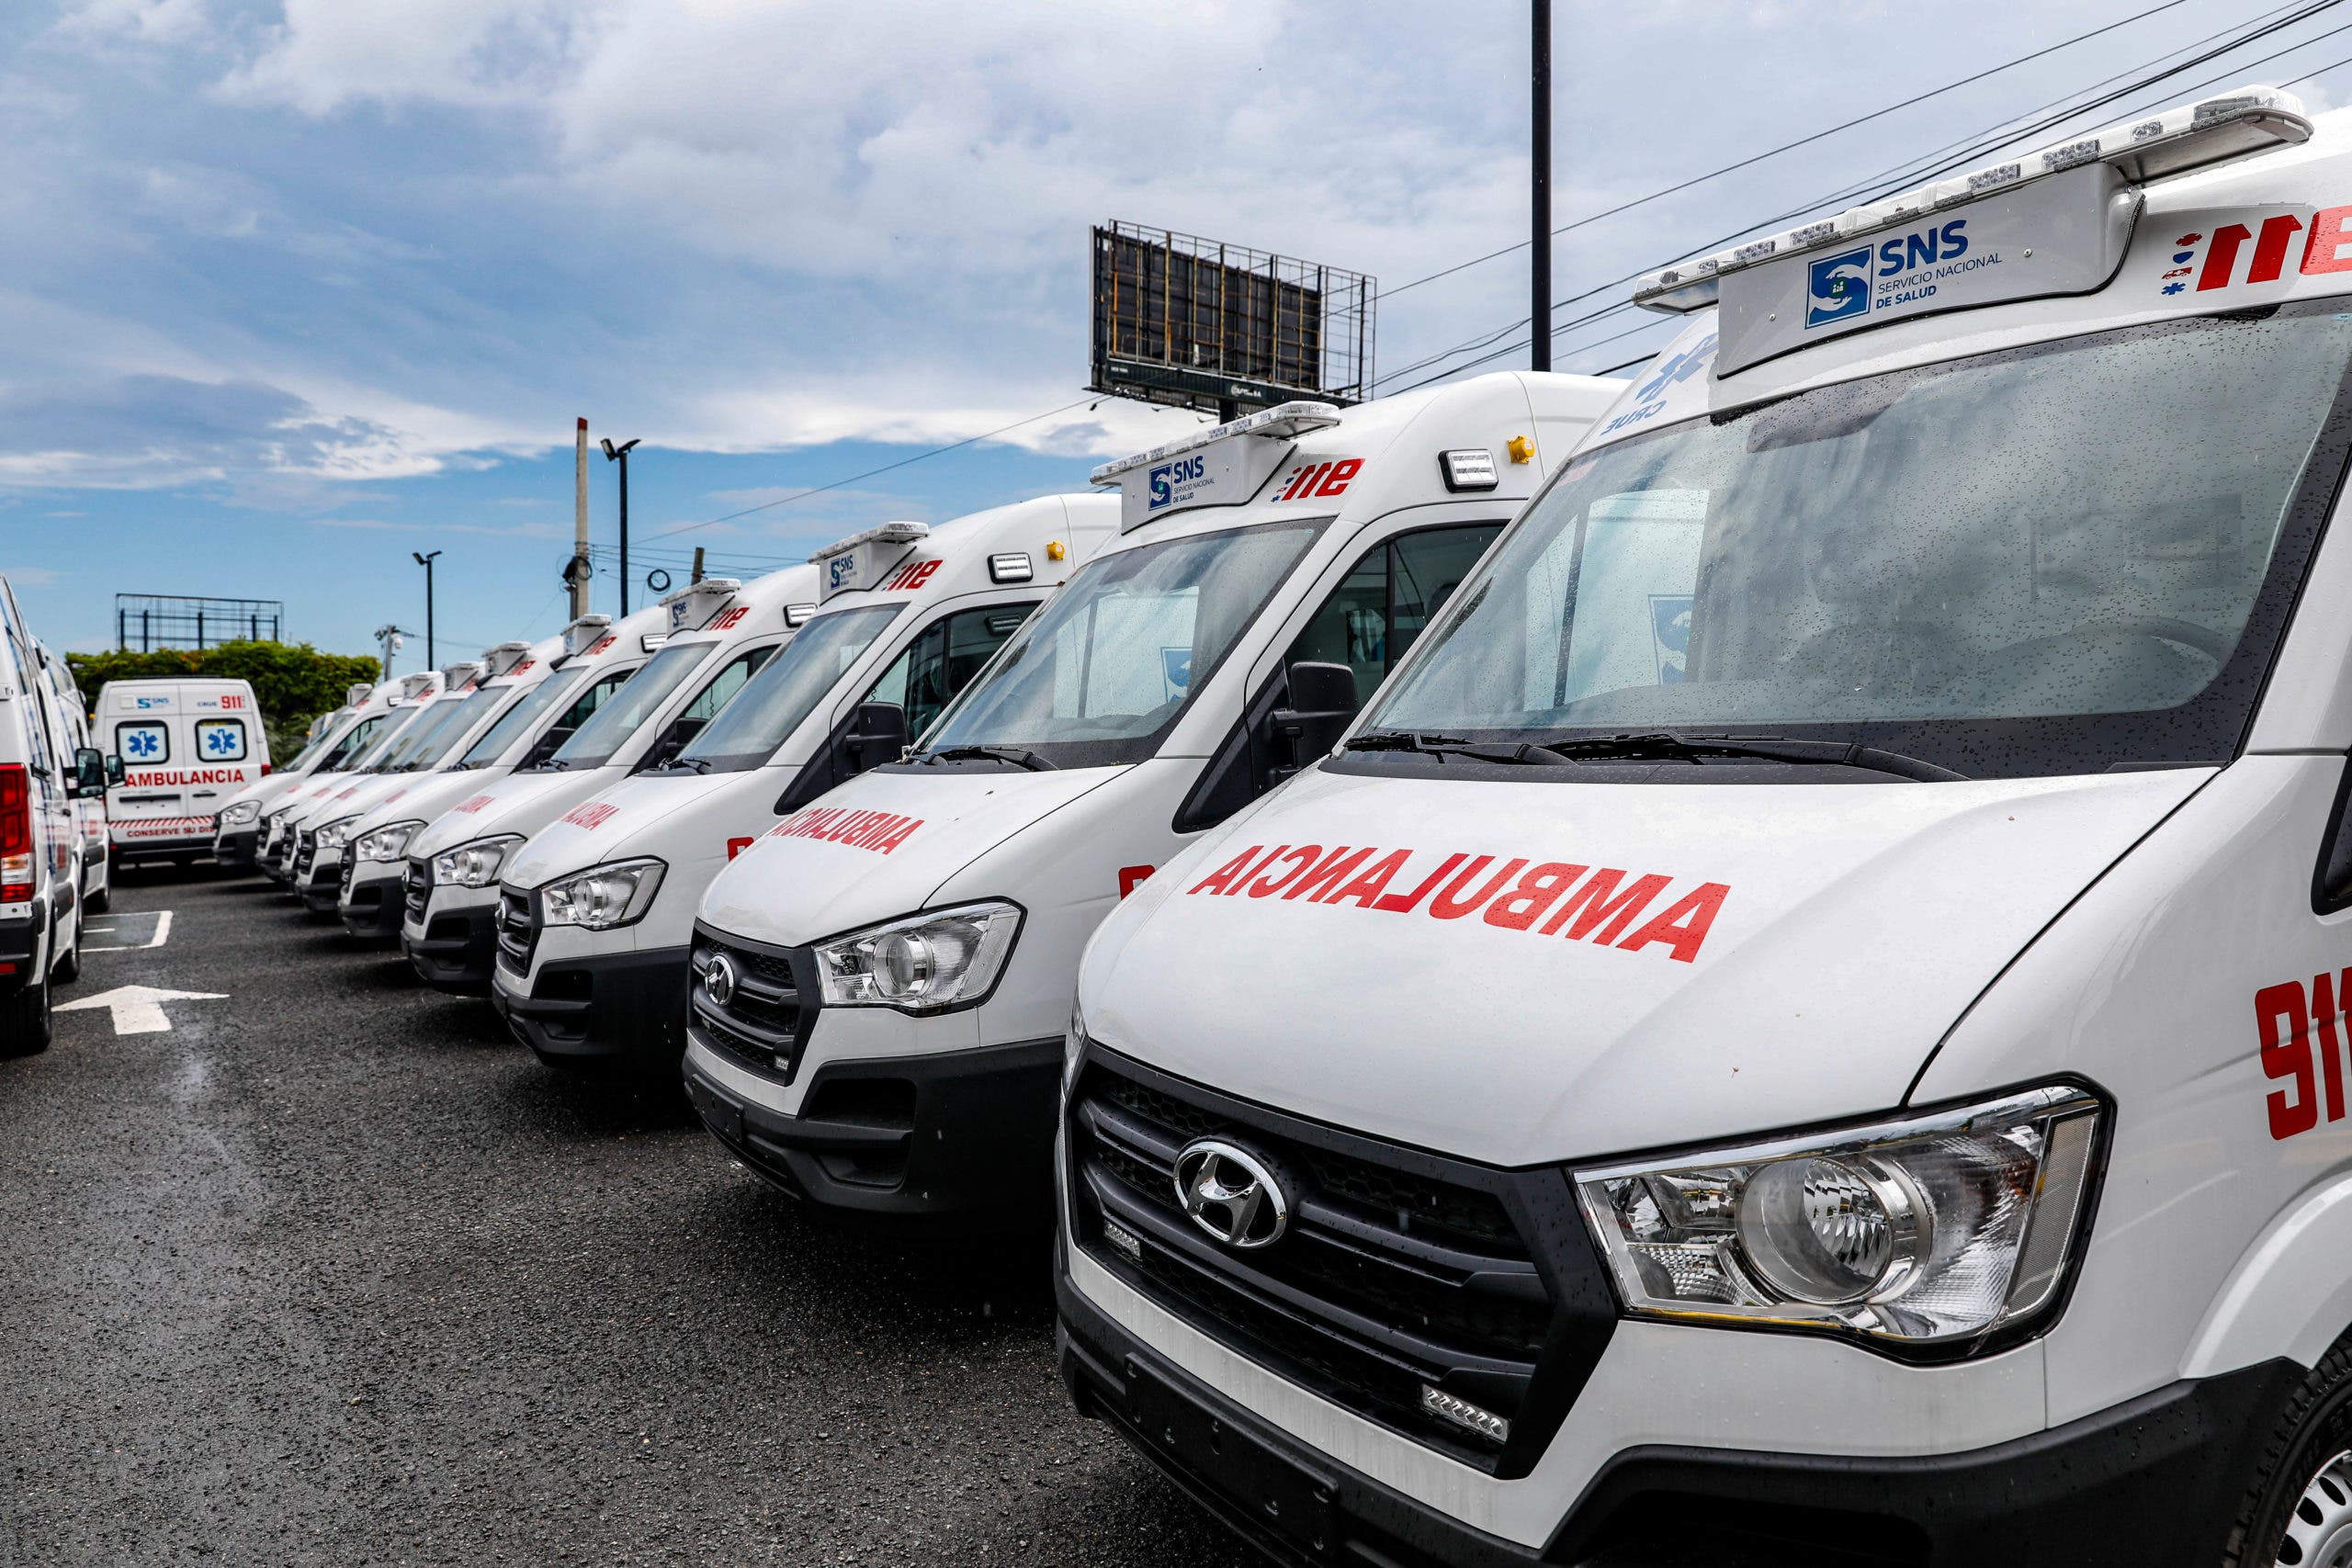 Sistema 911 entrega 33 nuevas ambulancias al SNS